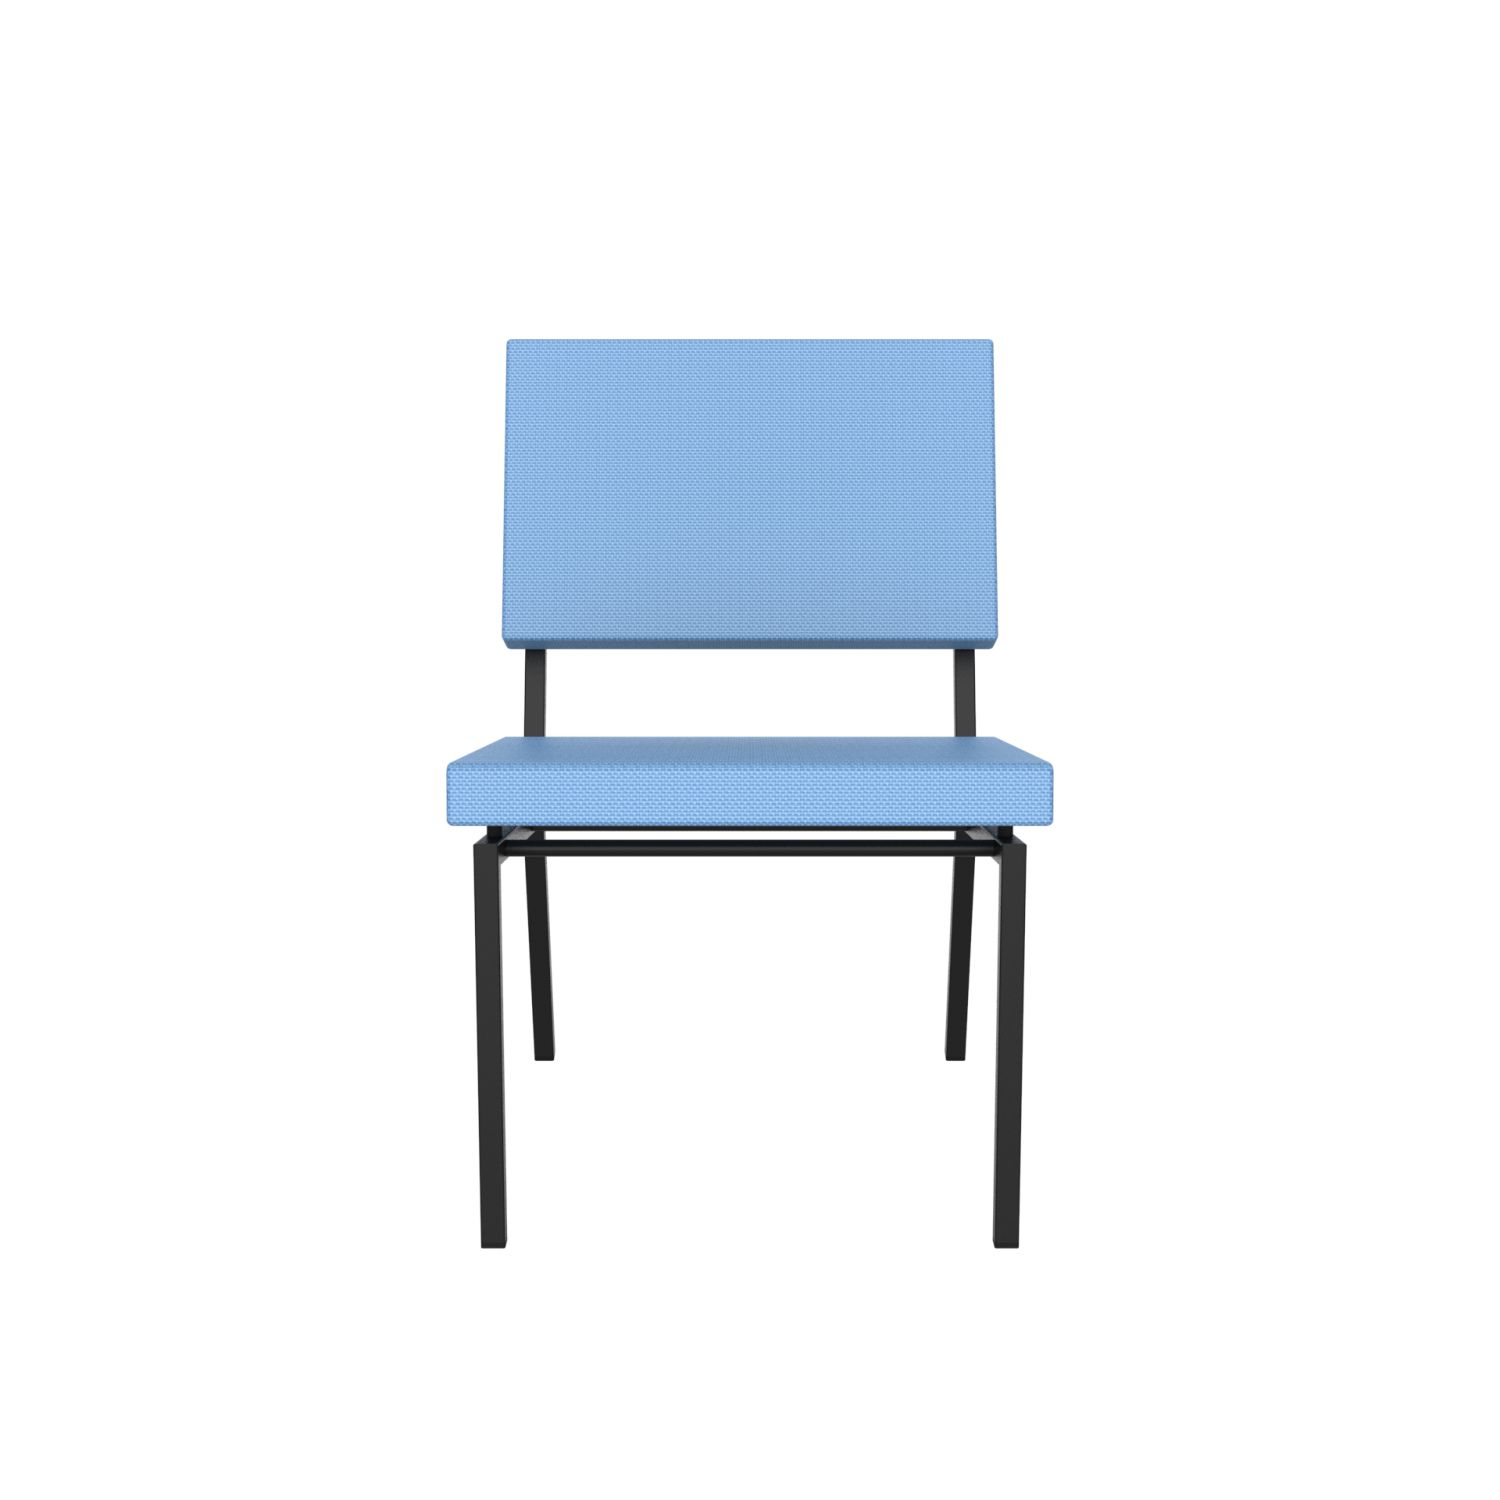 lensvelt gerrit veenendaal low chair without armrests blue horizon 040 price level 1 black frame ral9005 hard leg ends